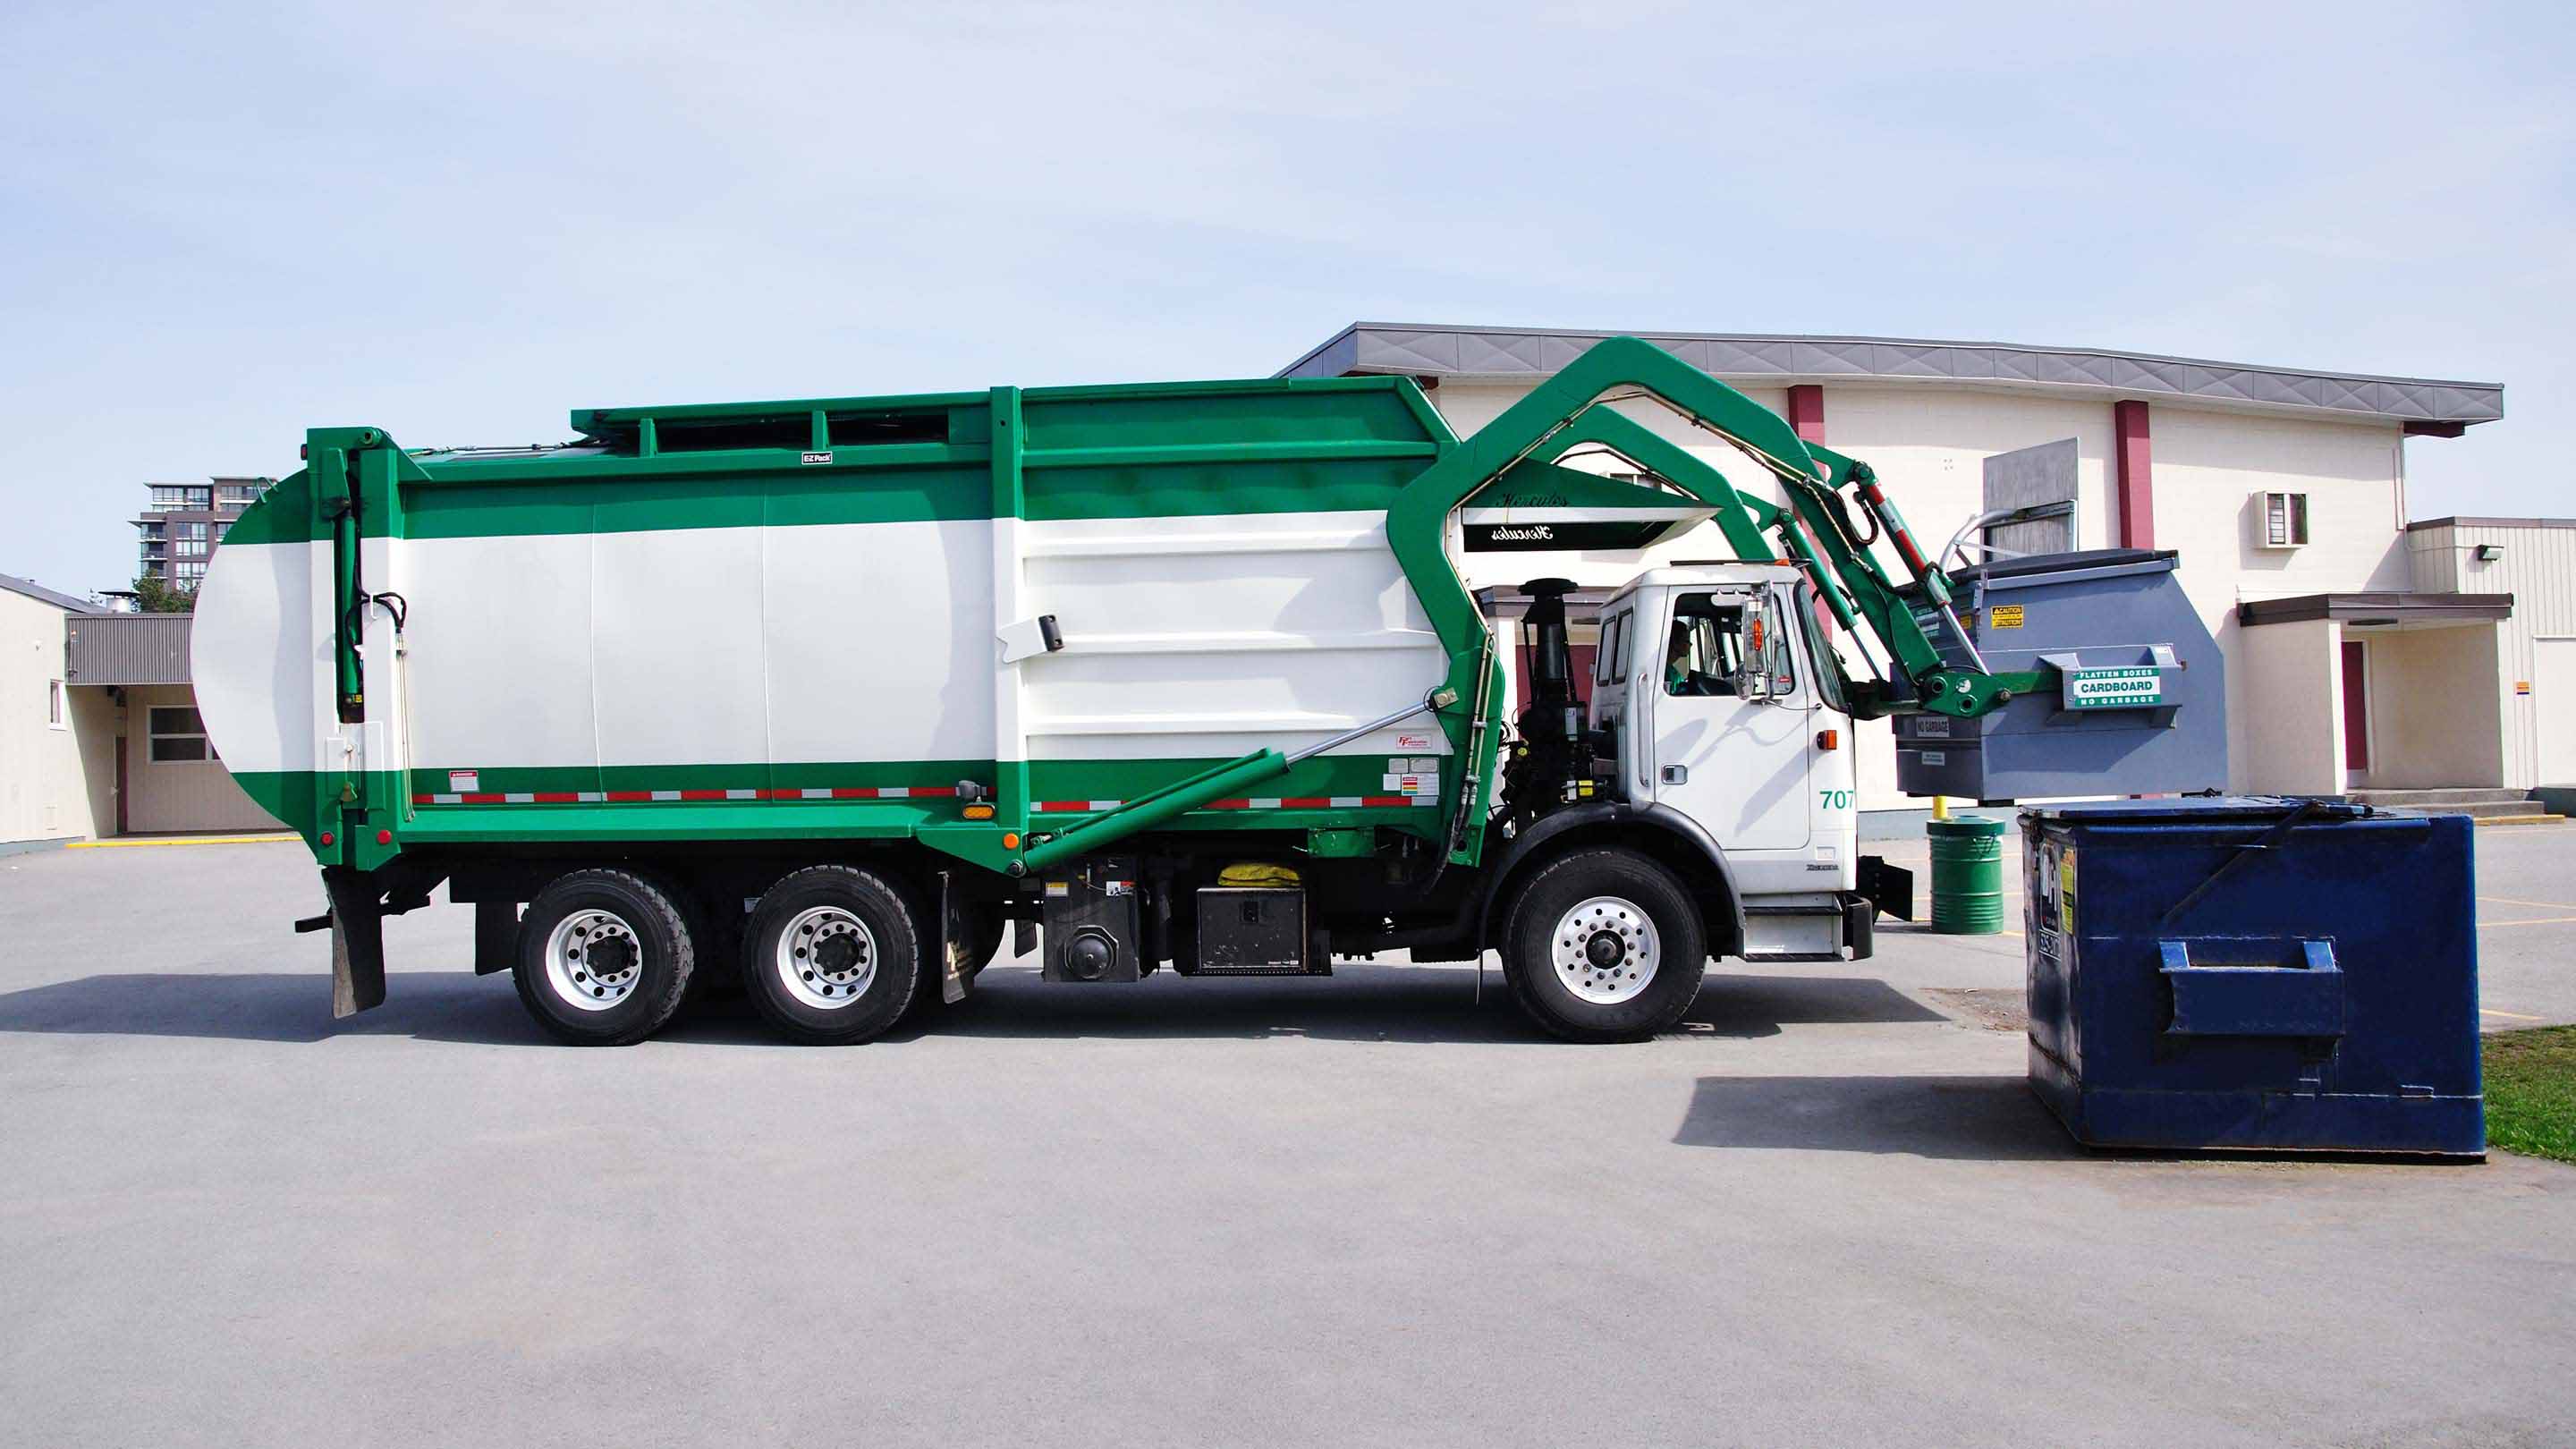 Camion della spazzatura verde e bianco che solleva un cassonetto blu